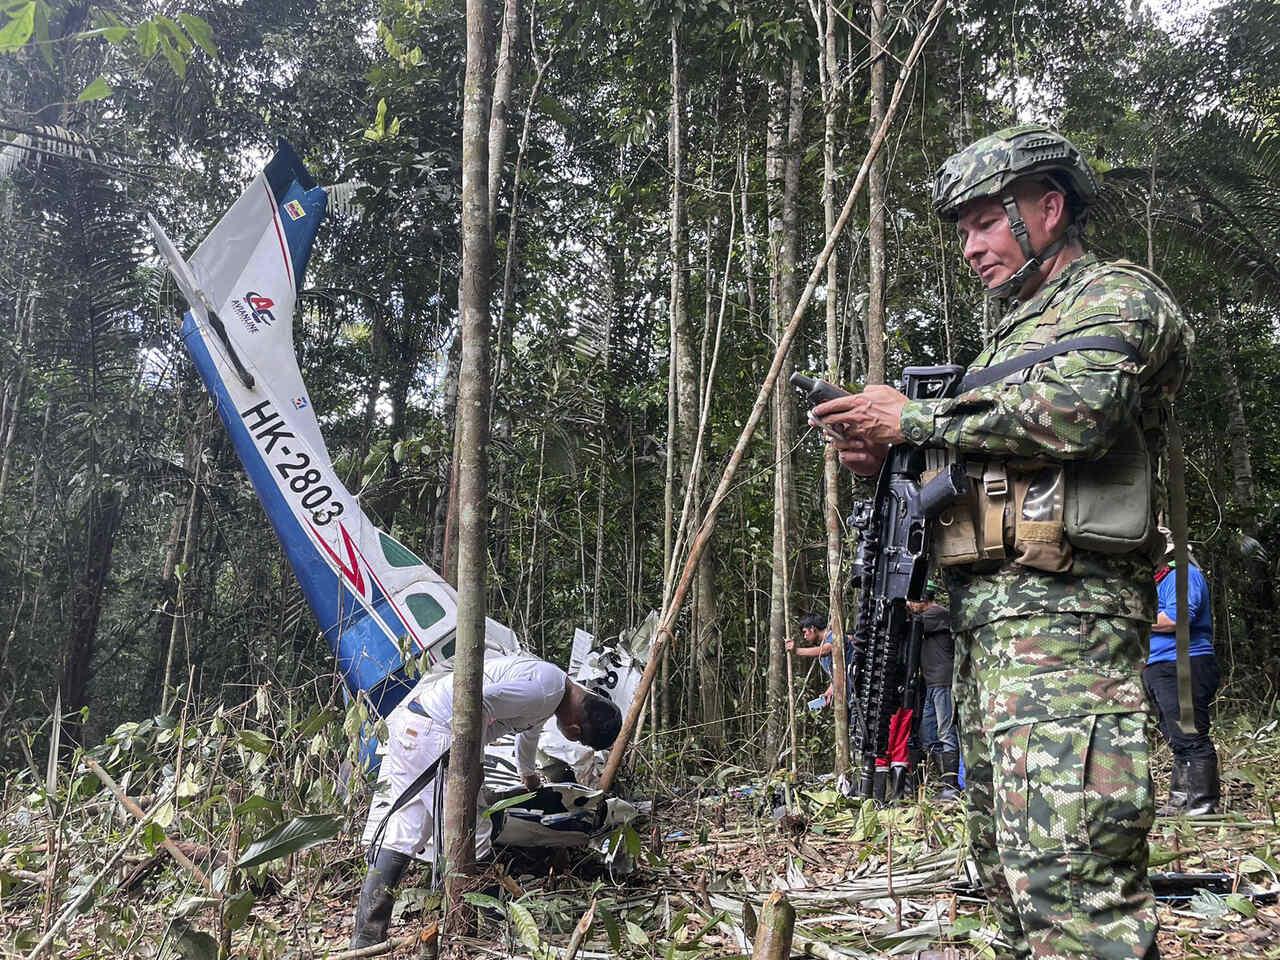 Legenda: Buscas por crianças desaparecidas envolveu mais de 150 militares Foto: Handout / Colombian army / AFP